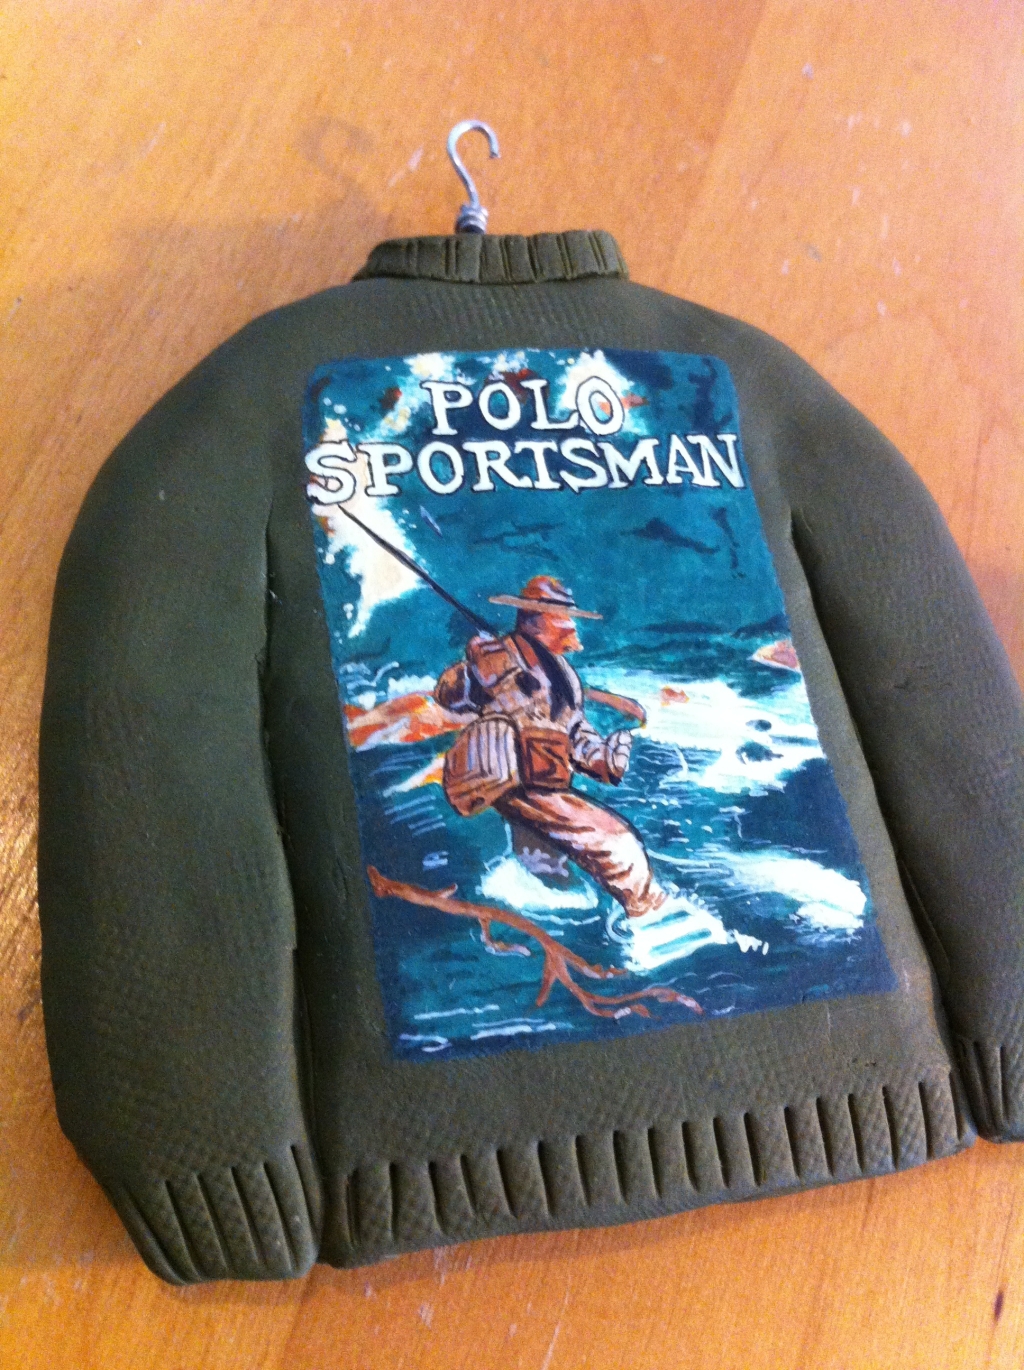 Polo Sportsman Knit